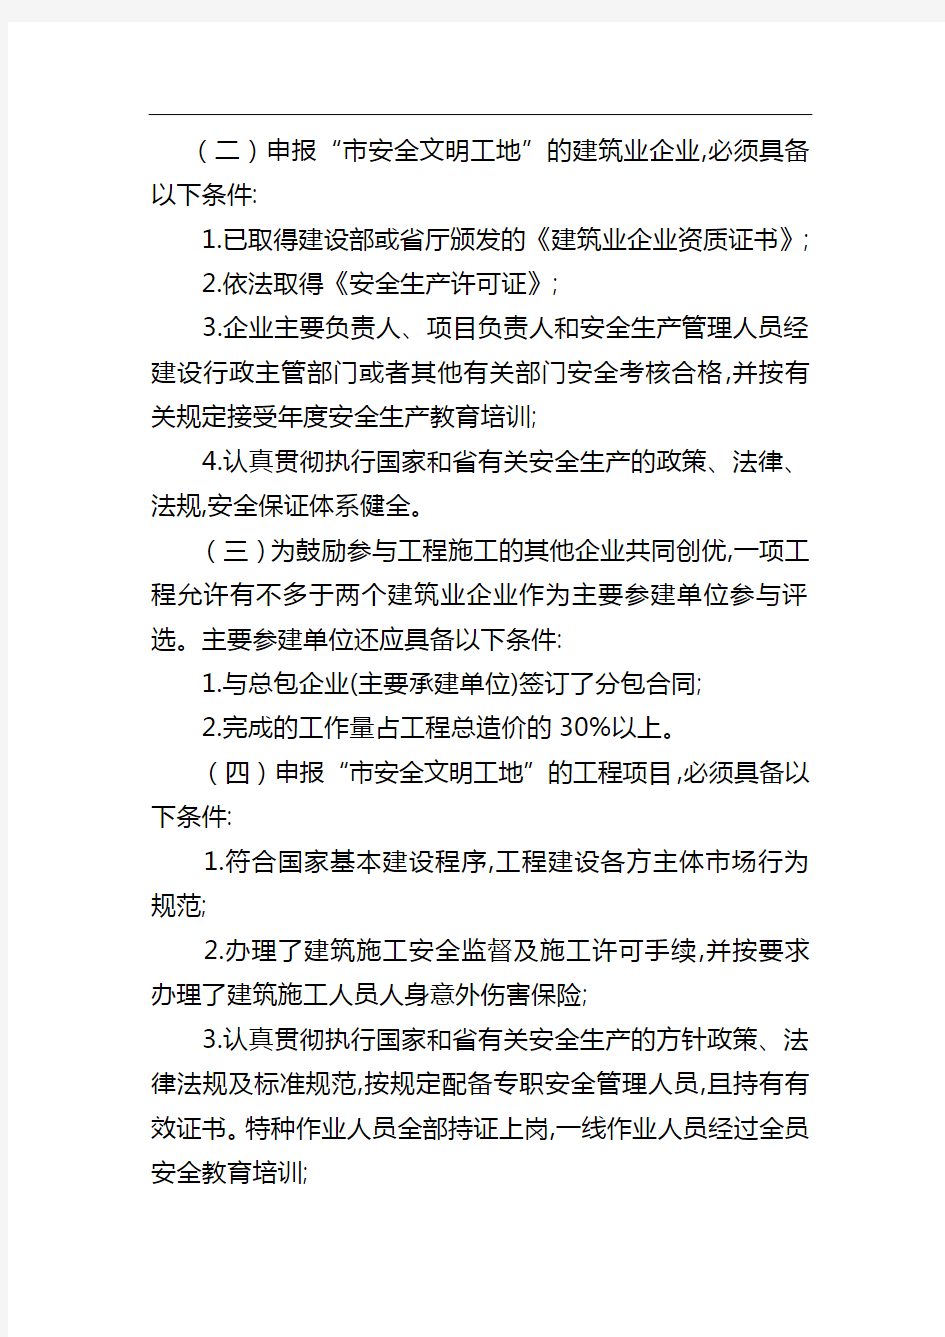 郑州市省、市级文明标准化工地、文明工地申报审批程序